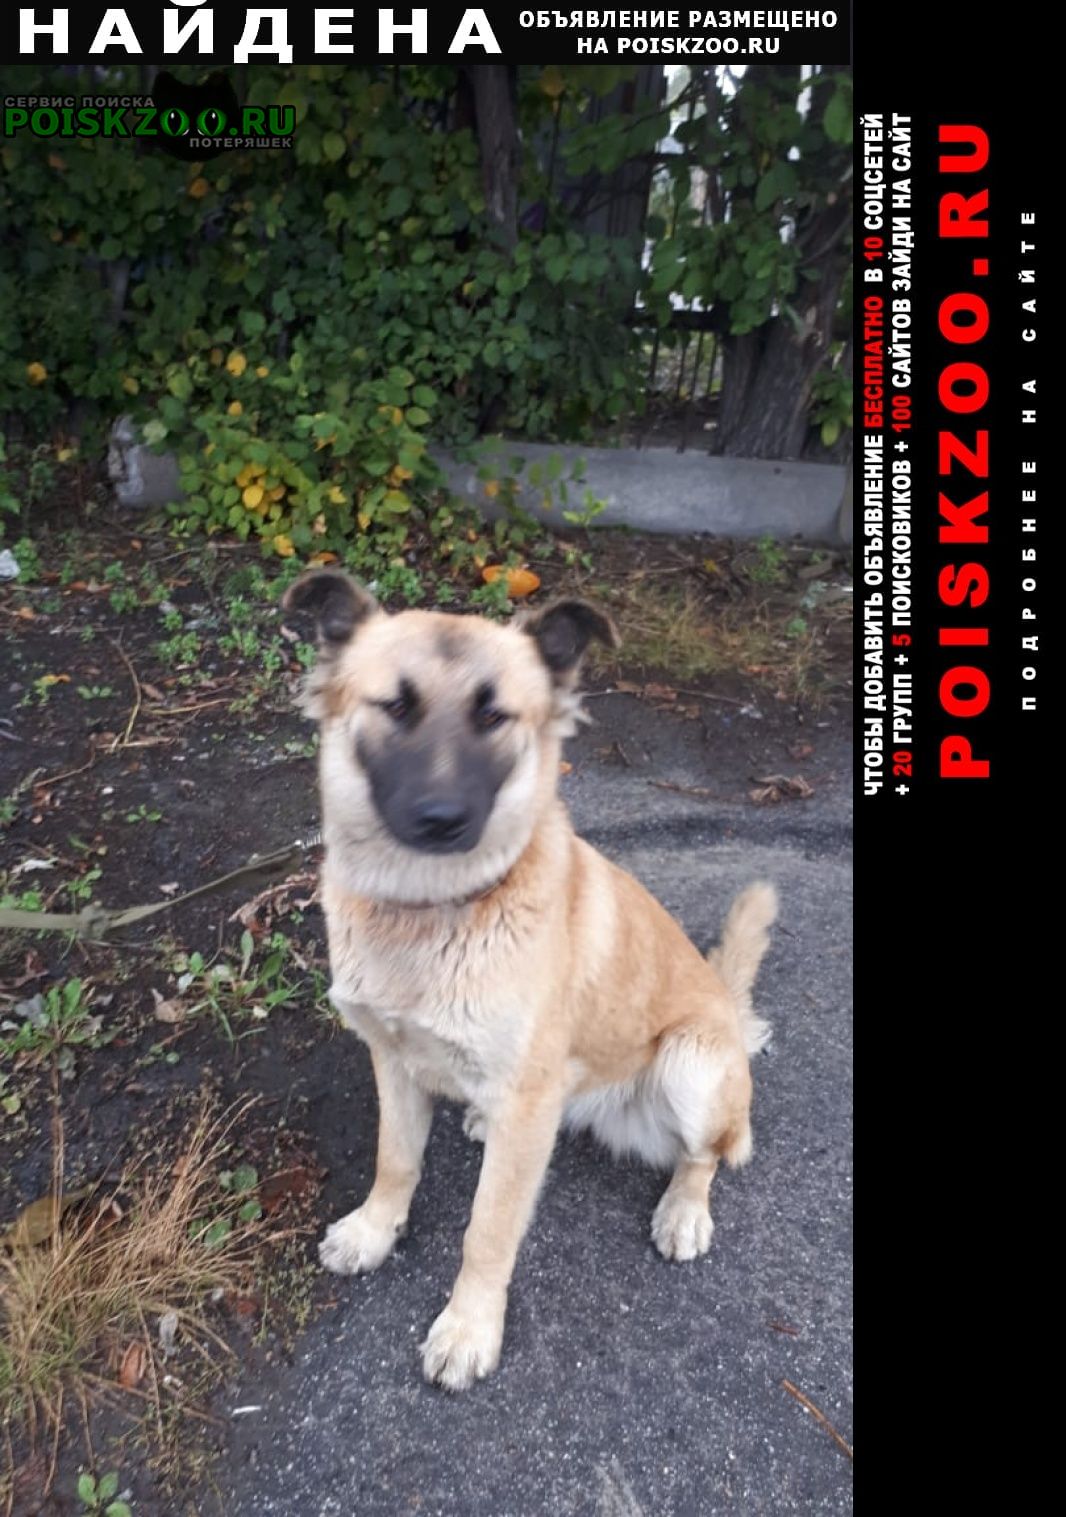 Найдена собака в ошейнике, бегала по витебскому Санкт-Петербург